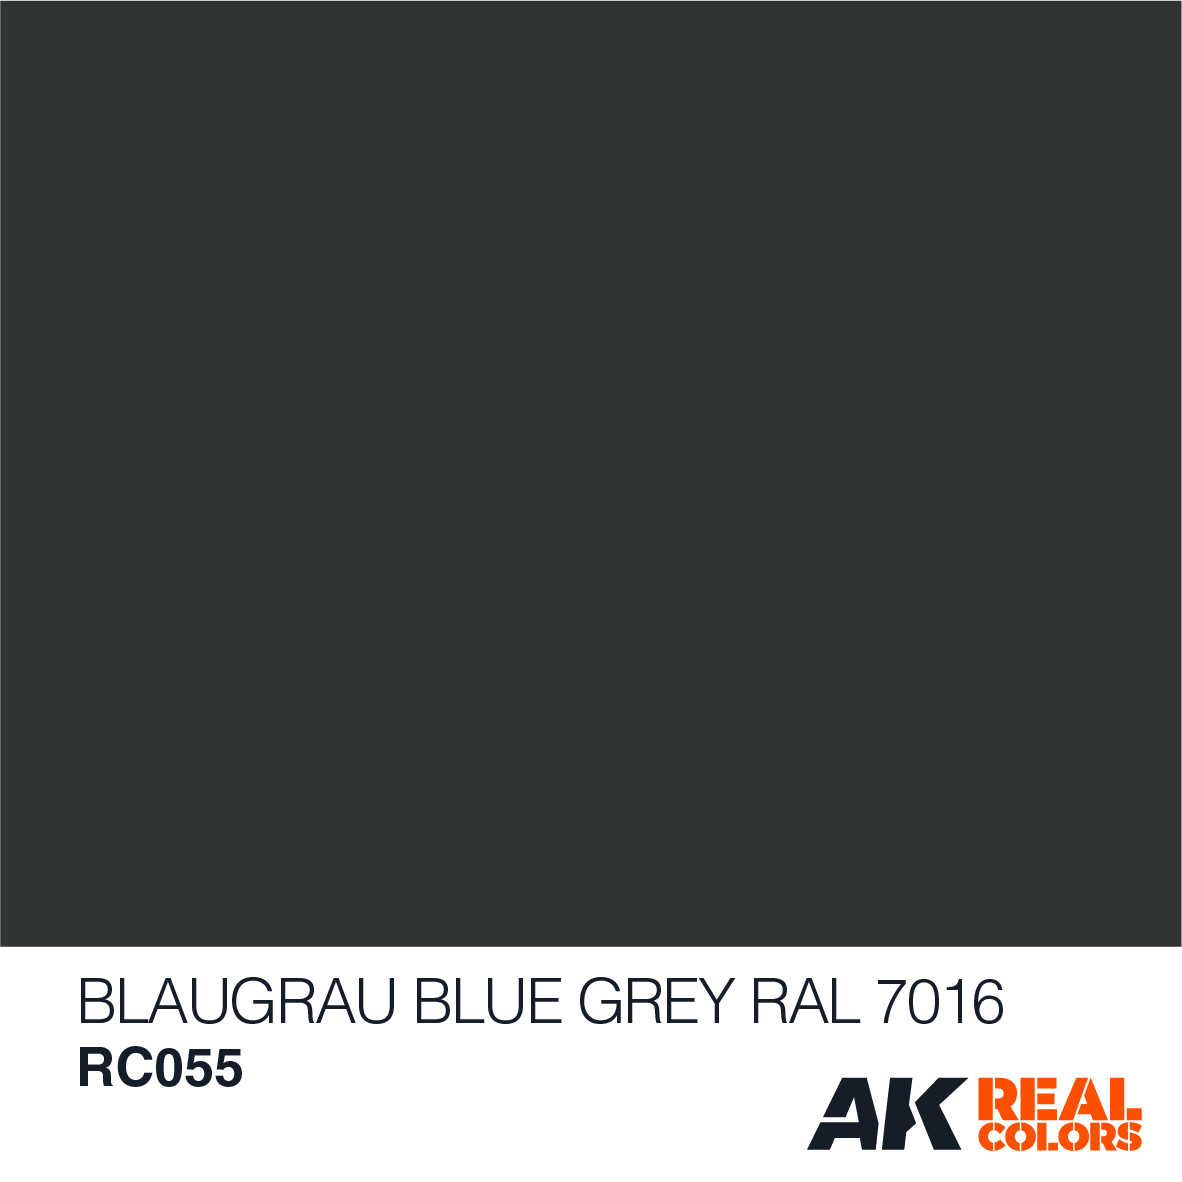 Blaugrau – Blue Gray RAL 7016